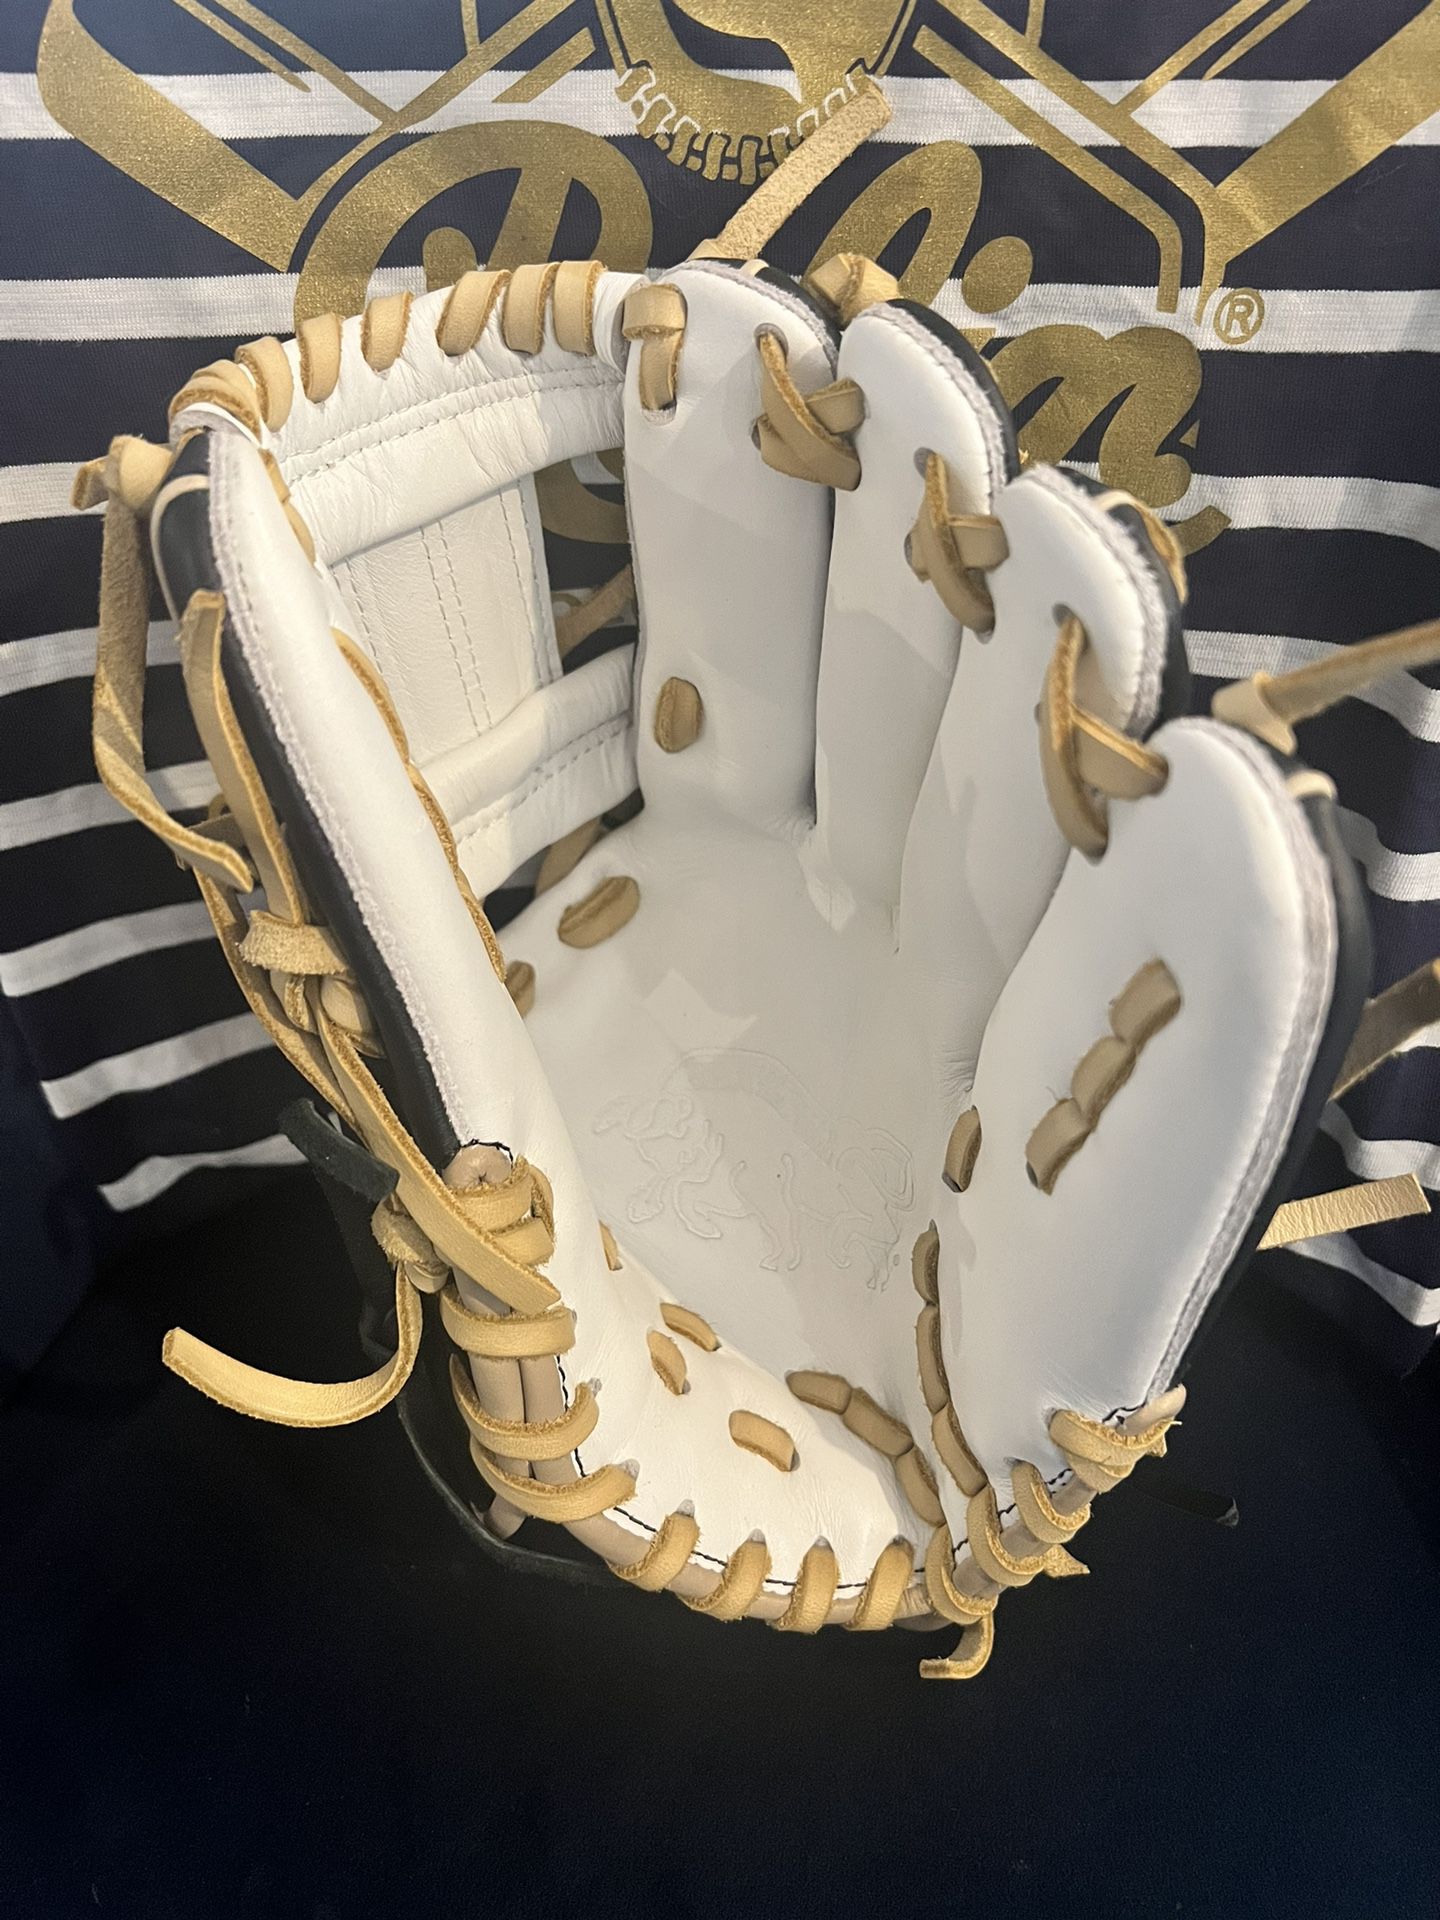 Rolin Barraza Custom Baseball Glove